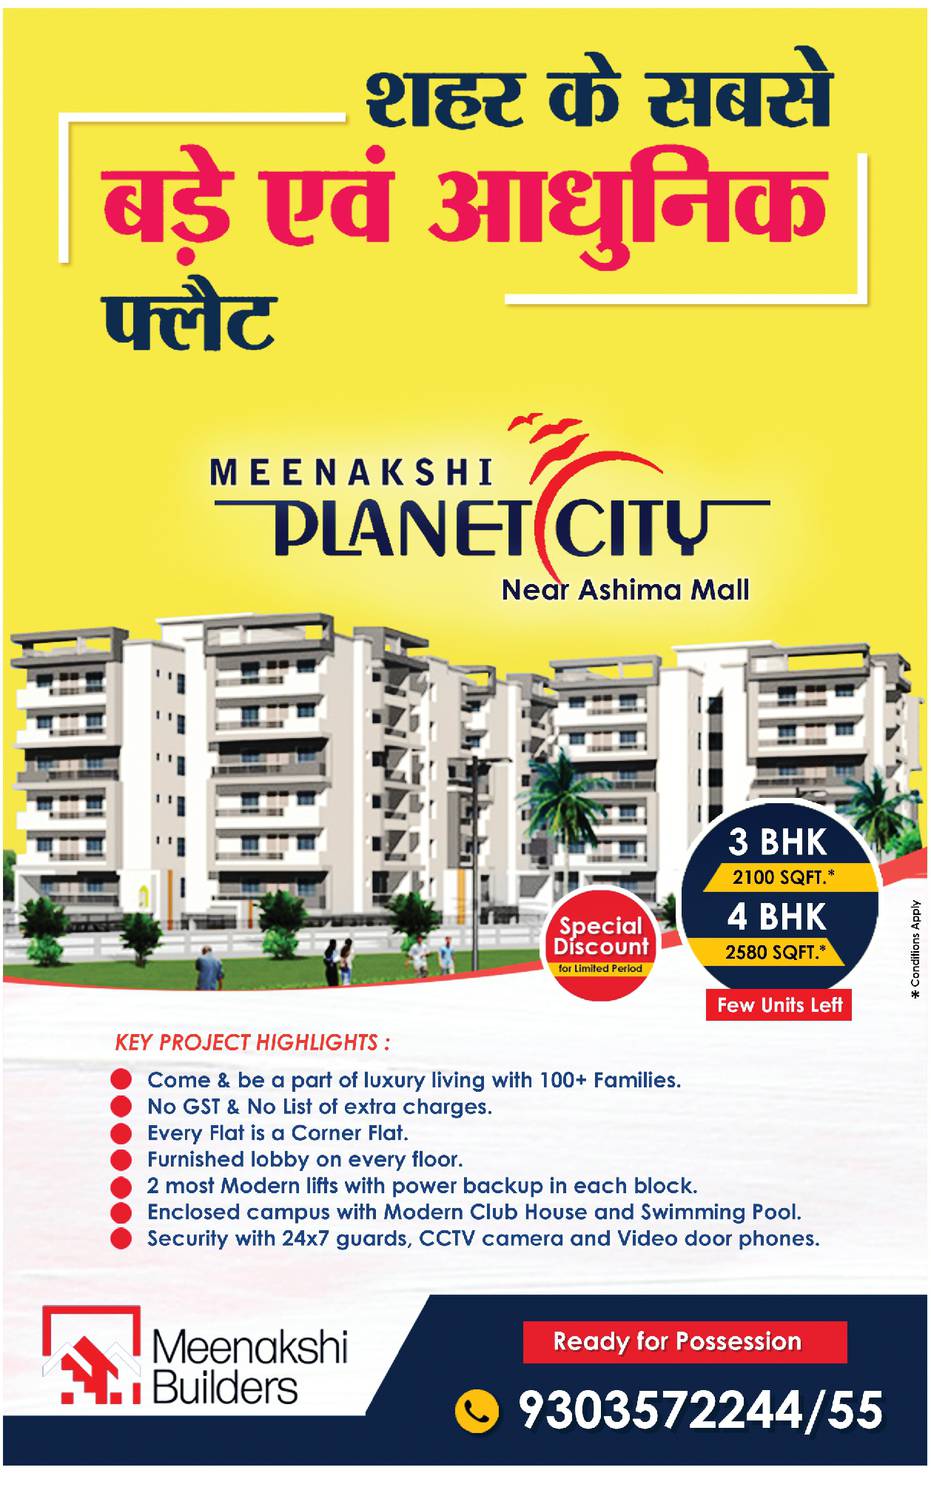 Meenakshi Builders Meenakshi Planet City Ad - Advert Gallery